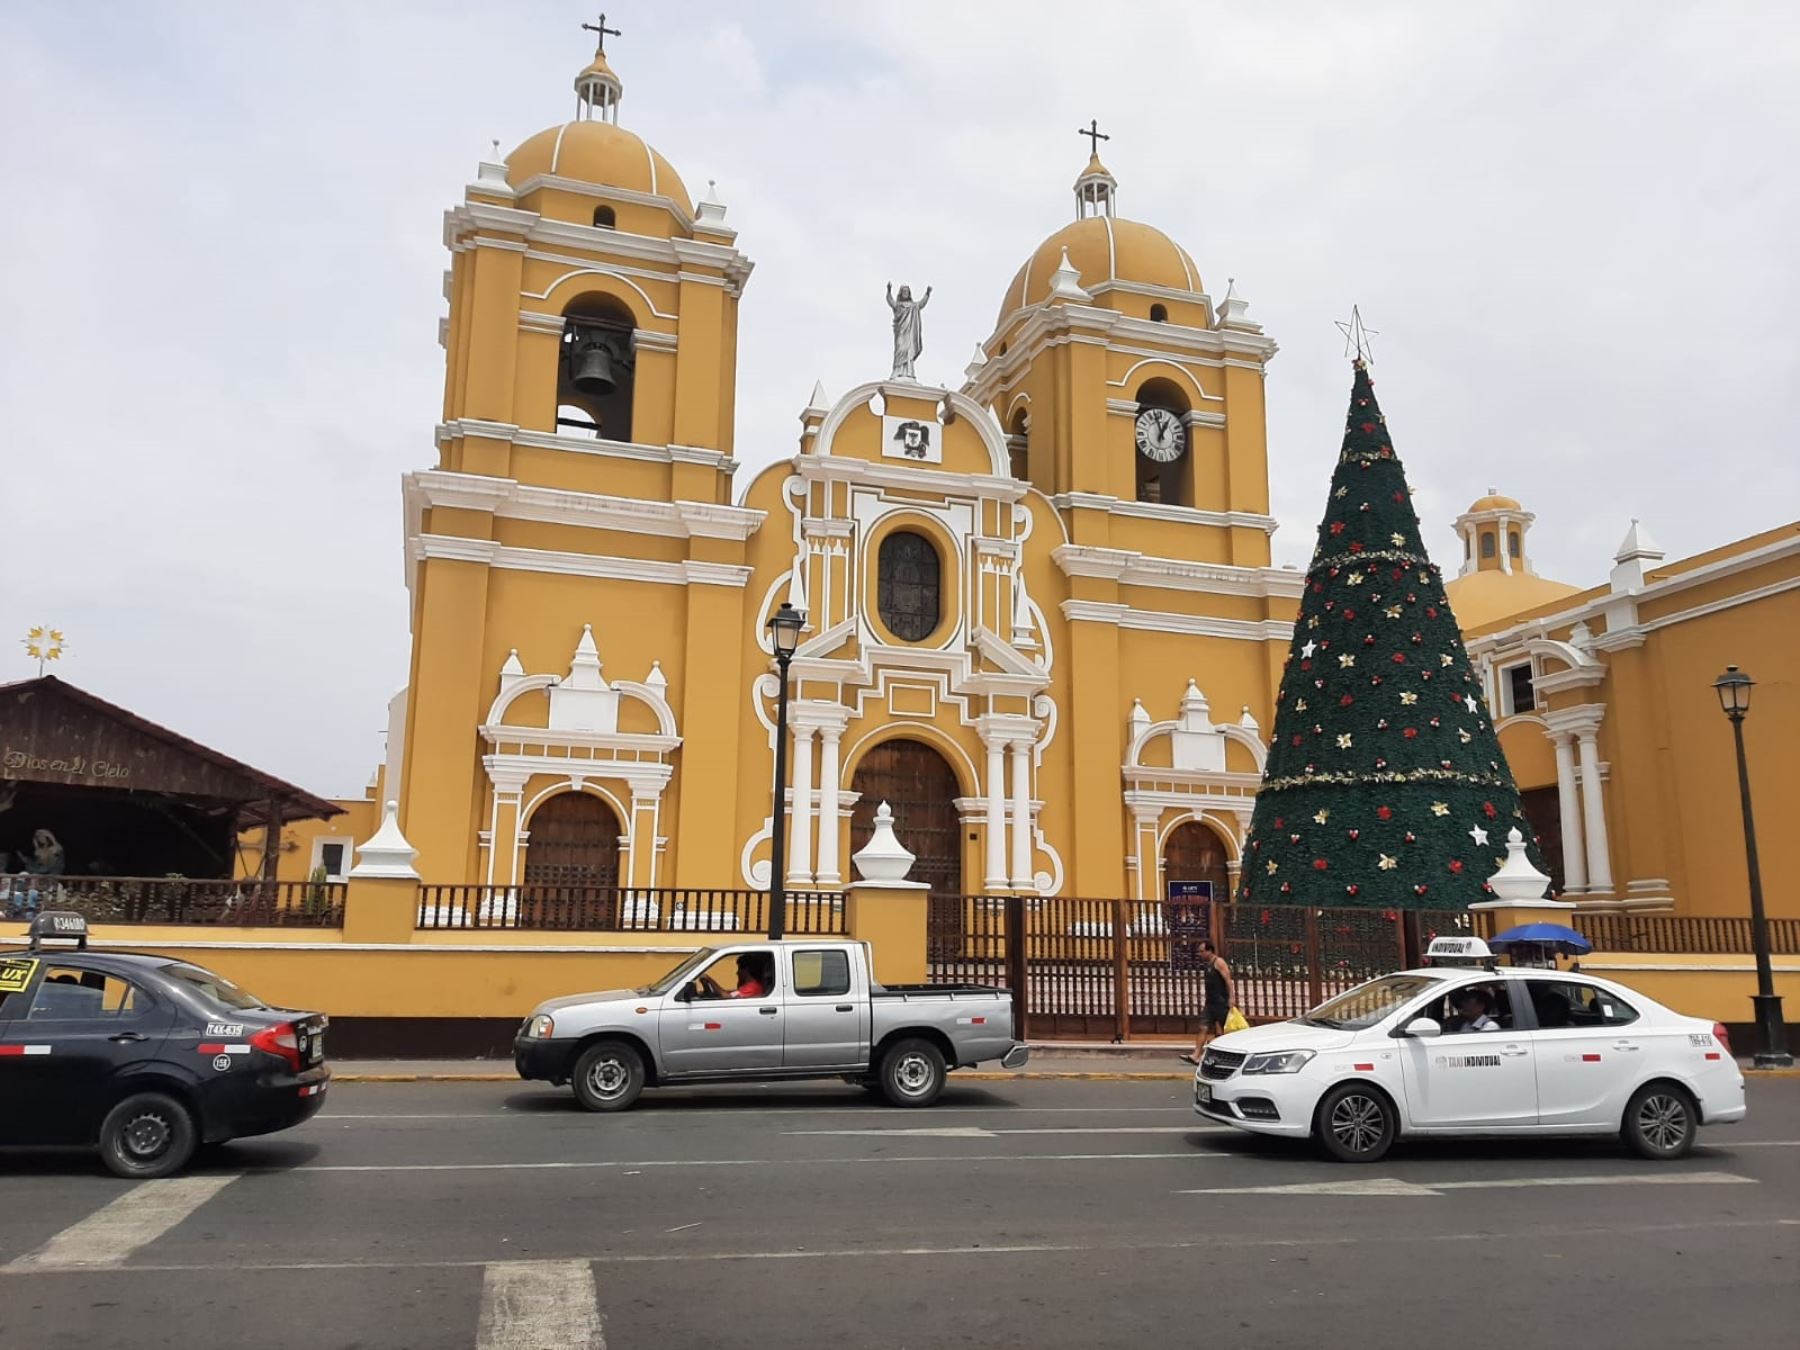 Desconocidos realizaron pintas en la fachada de la catedral de Trujillo y una casona, que forman parte del patrimonio monumental del centro histórico de Trujillo; además de un colegio. Foto: Luis Puell